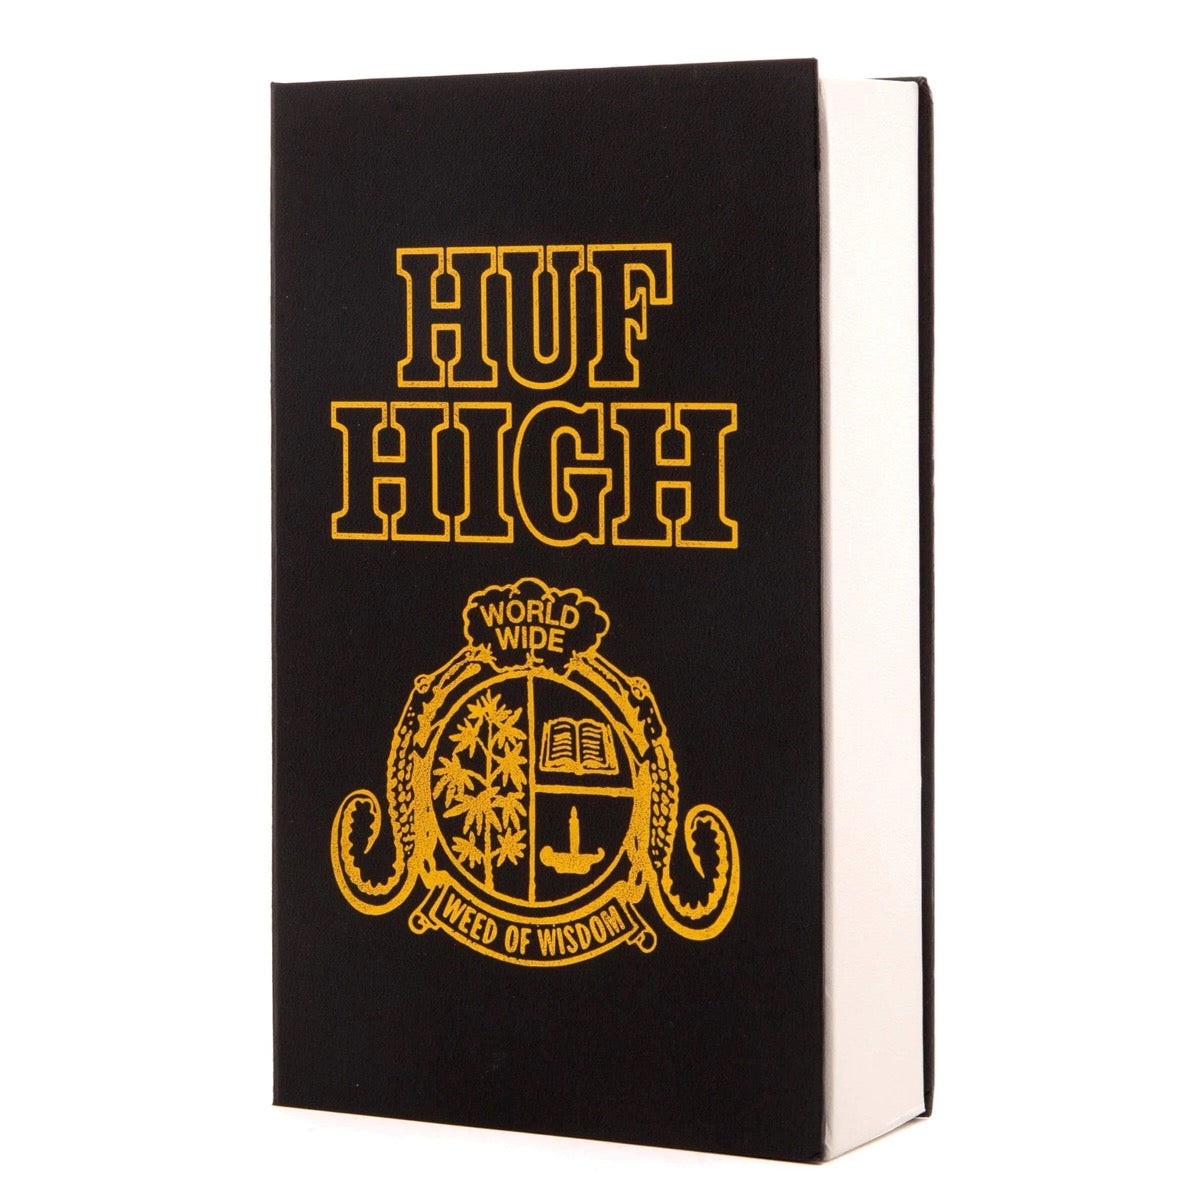 HUF HIGH BOOK STASH